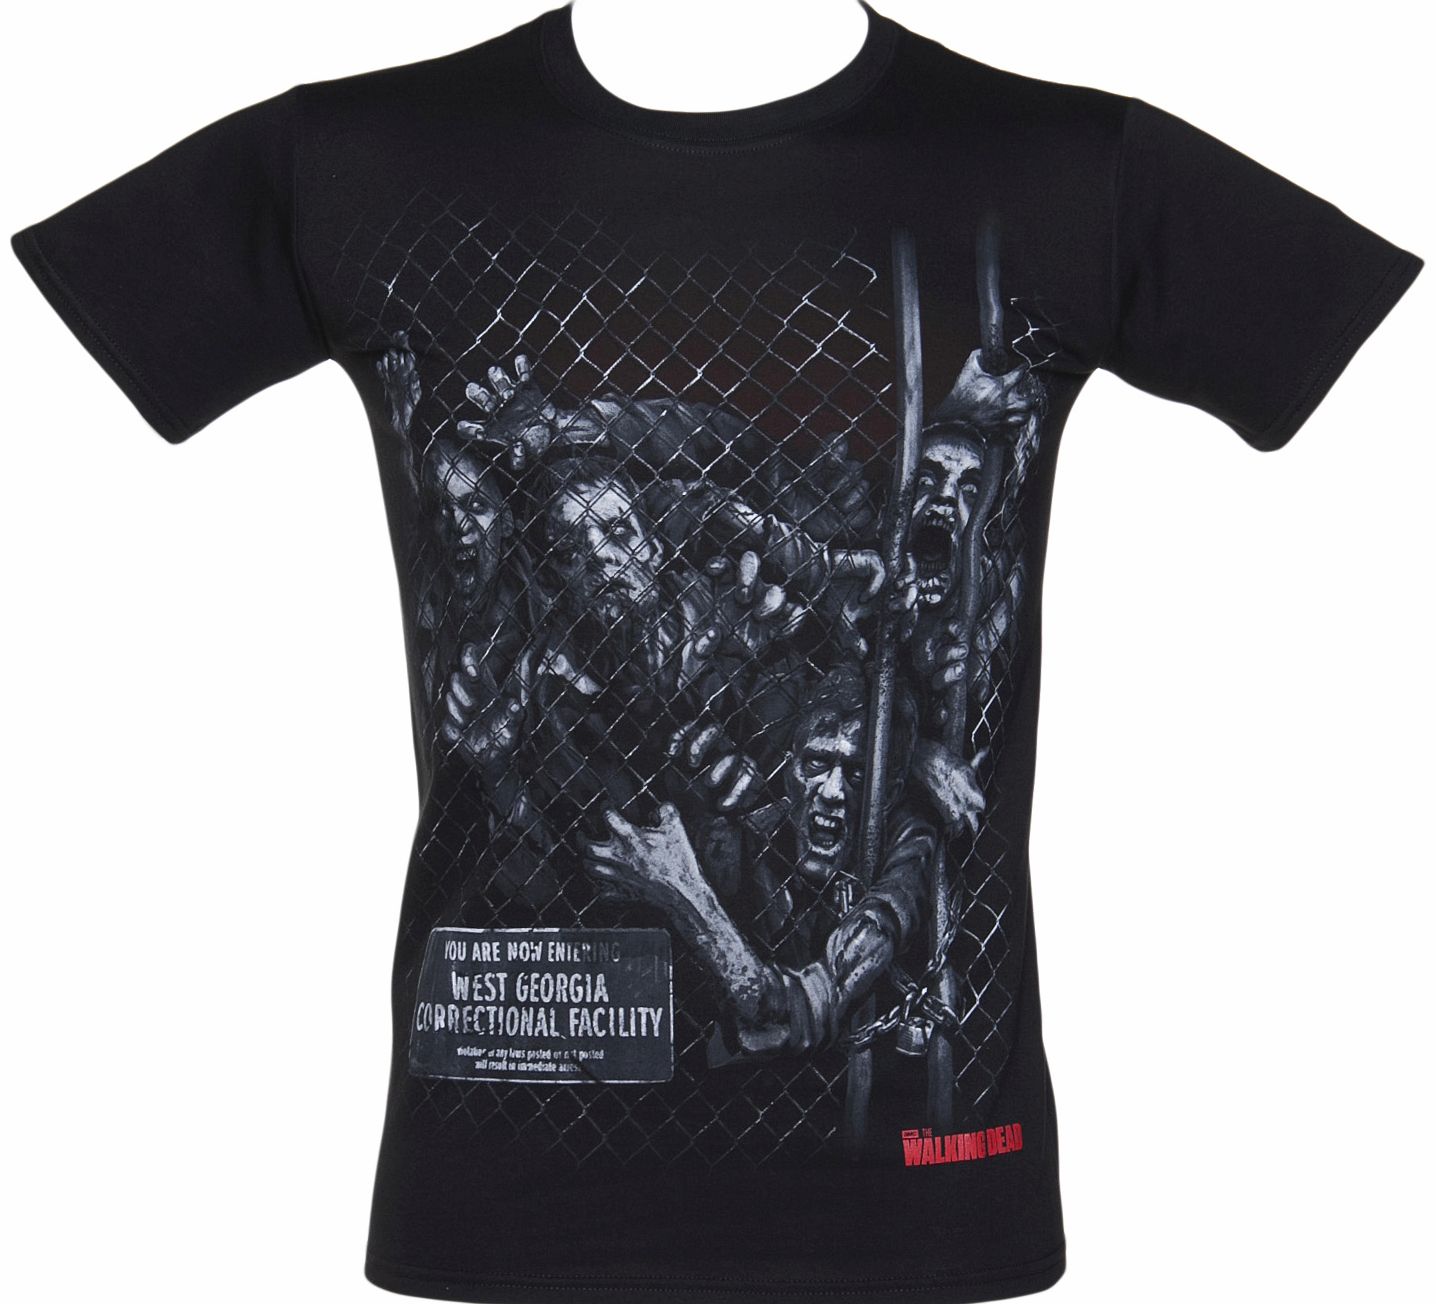 Black Walkers Fence Walking Dead T-Shirt